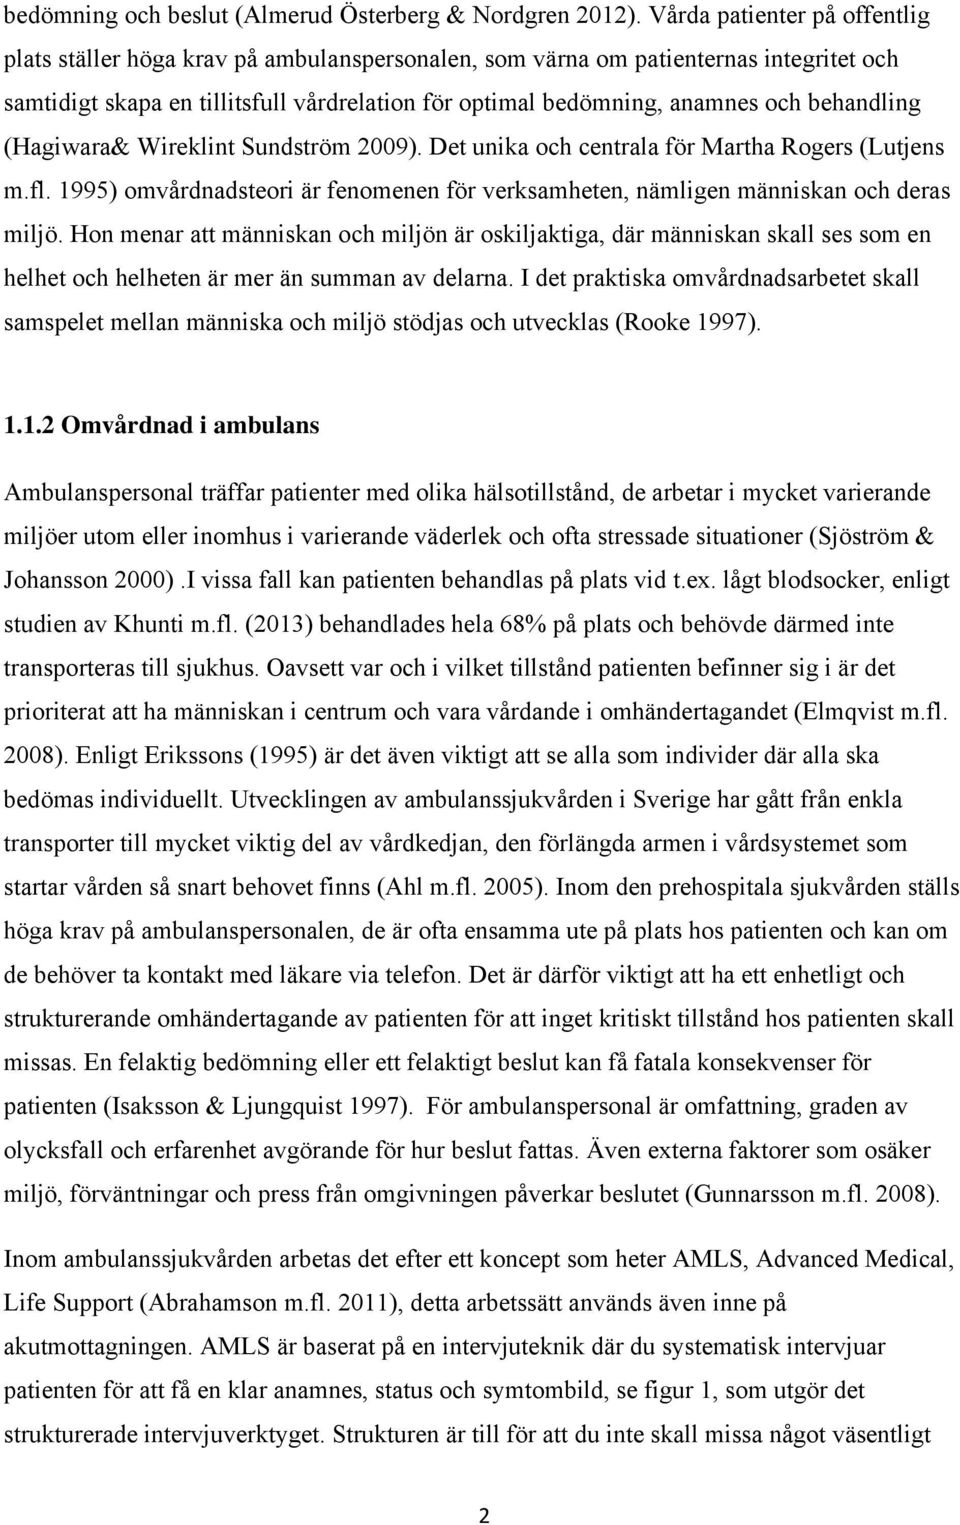 behandling (Hagiwara& Wireklint Sundström 2009). Det unika och centrala för Martha Rogers (Lutjens m.fl. 1995) omvårdnadsteori är fenomenen för verksamheten, nämligen människan och deras miljö.